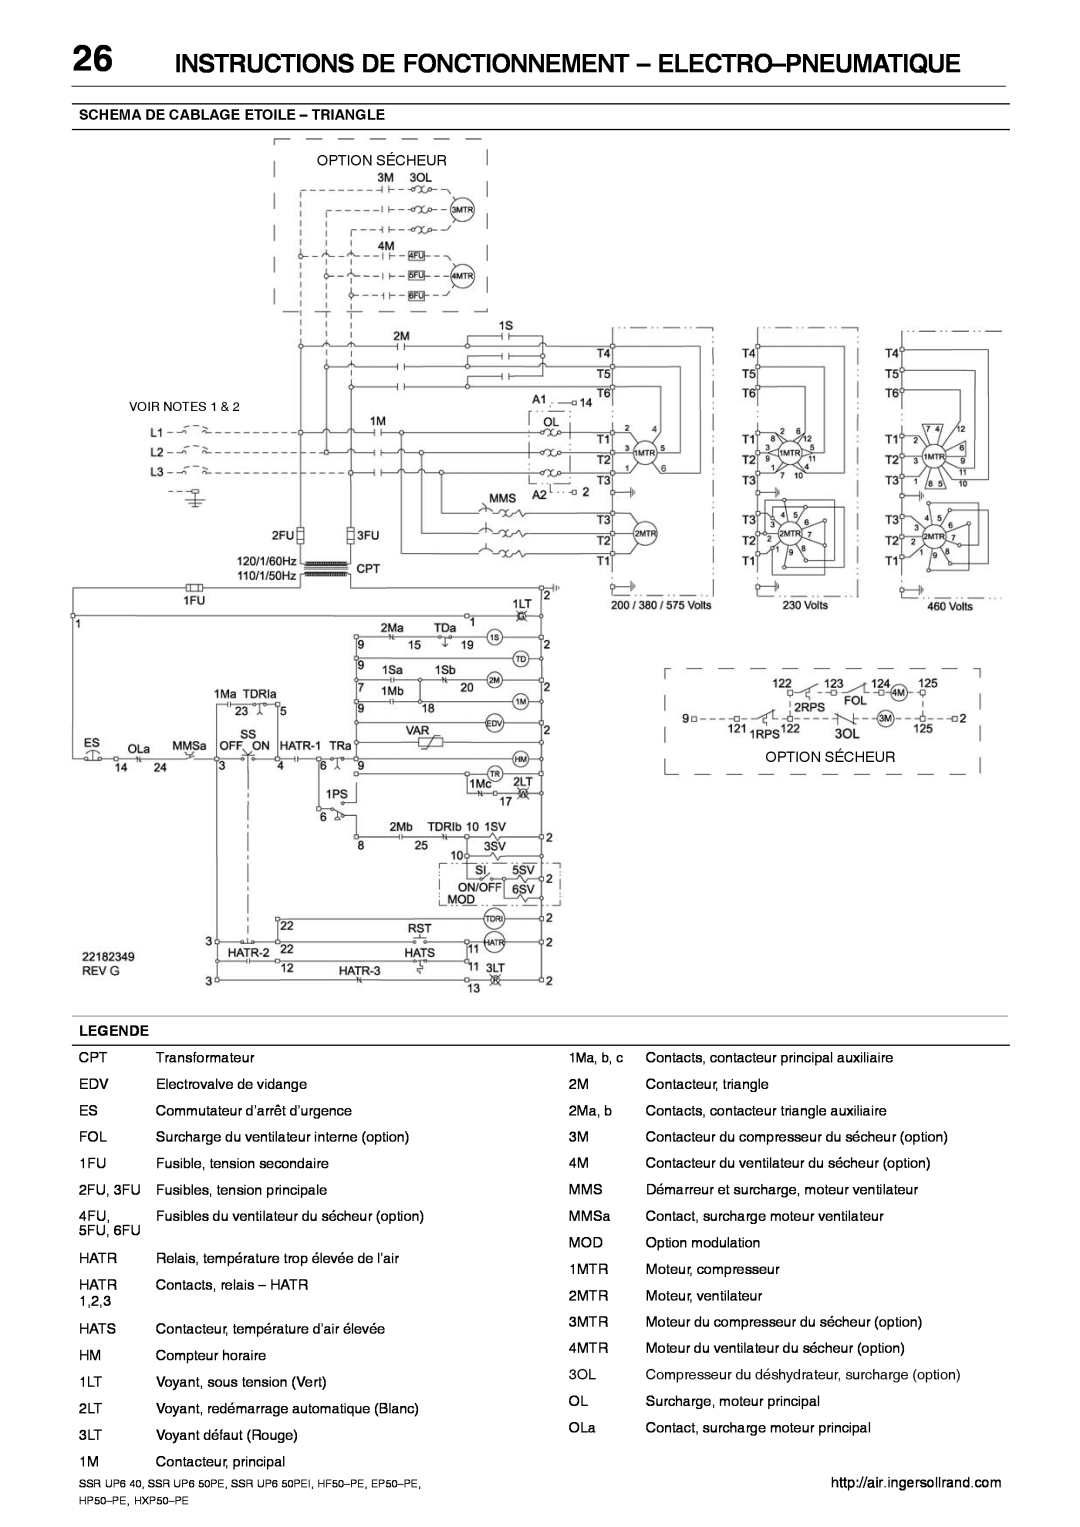 Ingersoll-Rand HXP50-PE Instructions De Fonctionnement - Electro-Pneumatique, Schema De Cablage Etoile - Triangle, Legende 